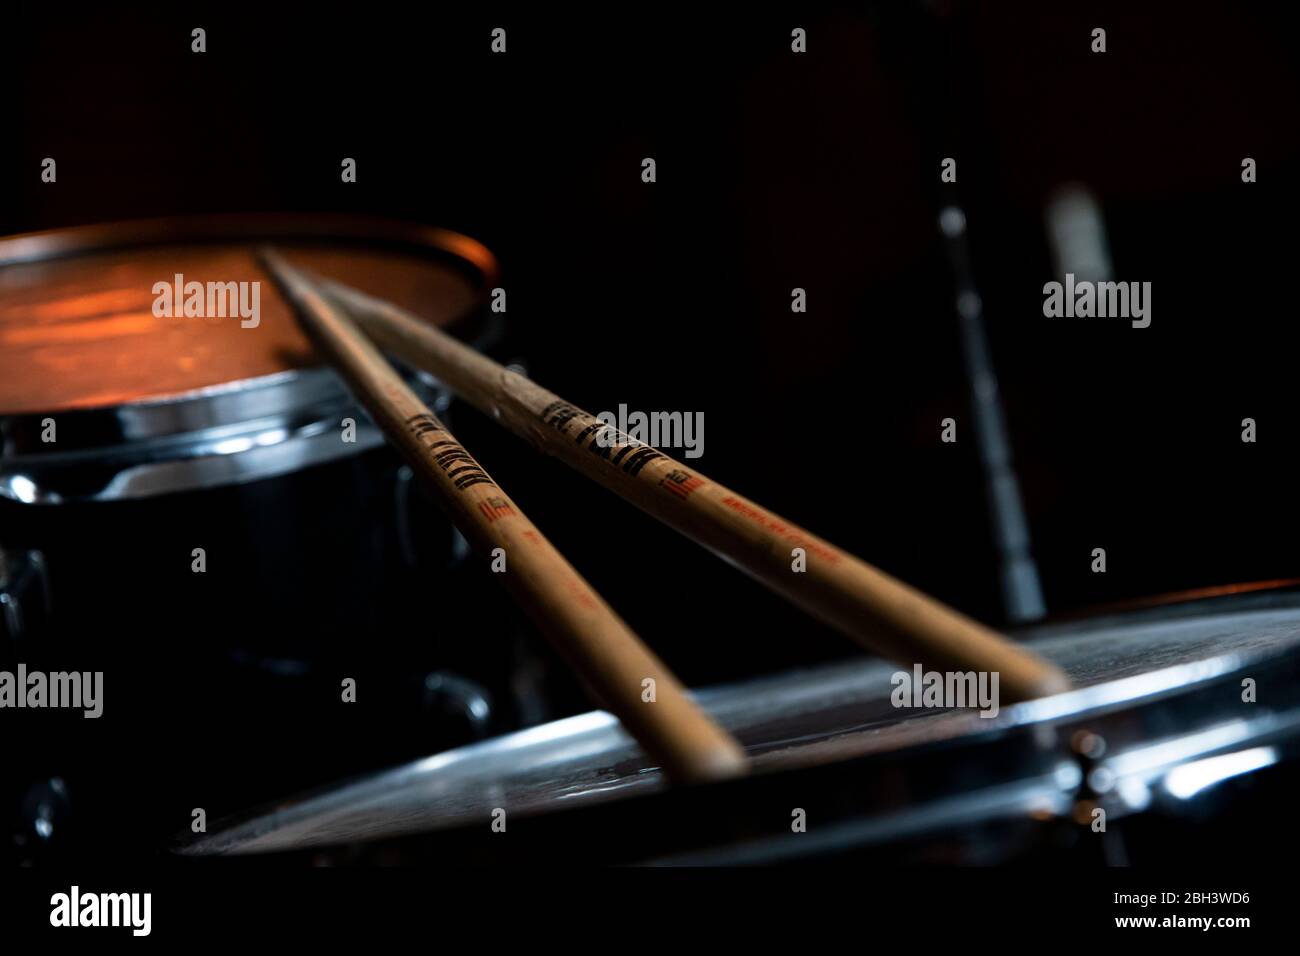 Belgrad, Serbien - Mittwoch, ‎April ‎15, ‎2020: Gebrauchte Vic Firth  Drumsticks, die im Musikstudio auf den Drums ruht. Illustratives  redaktionelles Bild Stockfotografie - Alamy